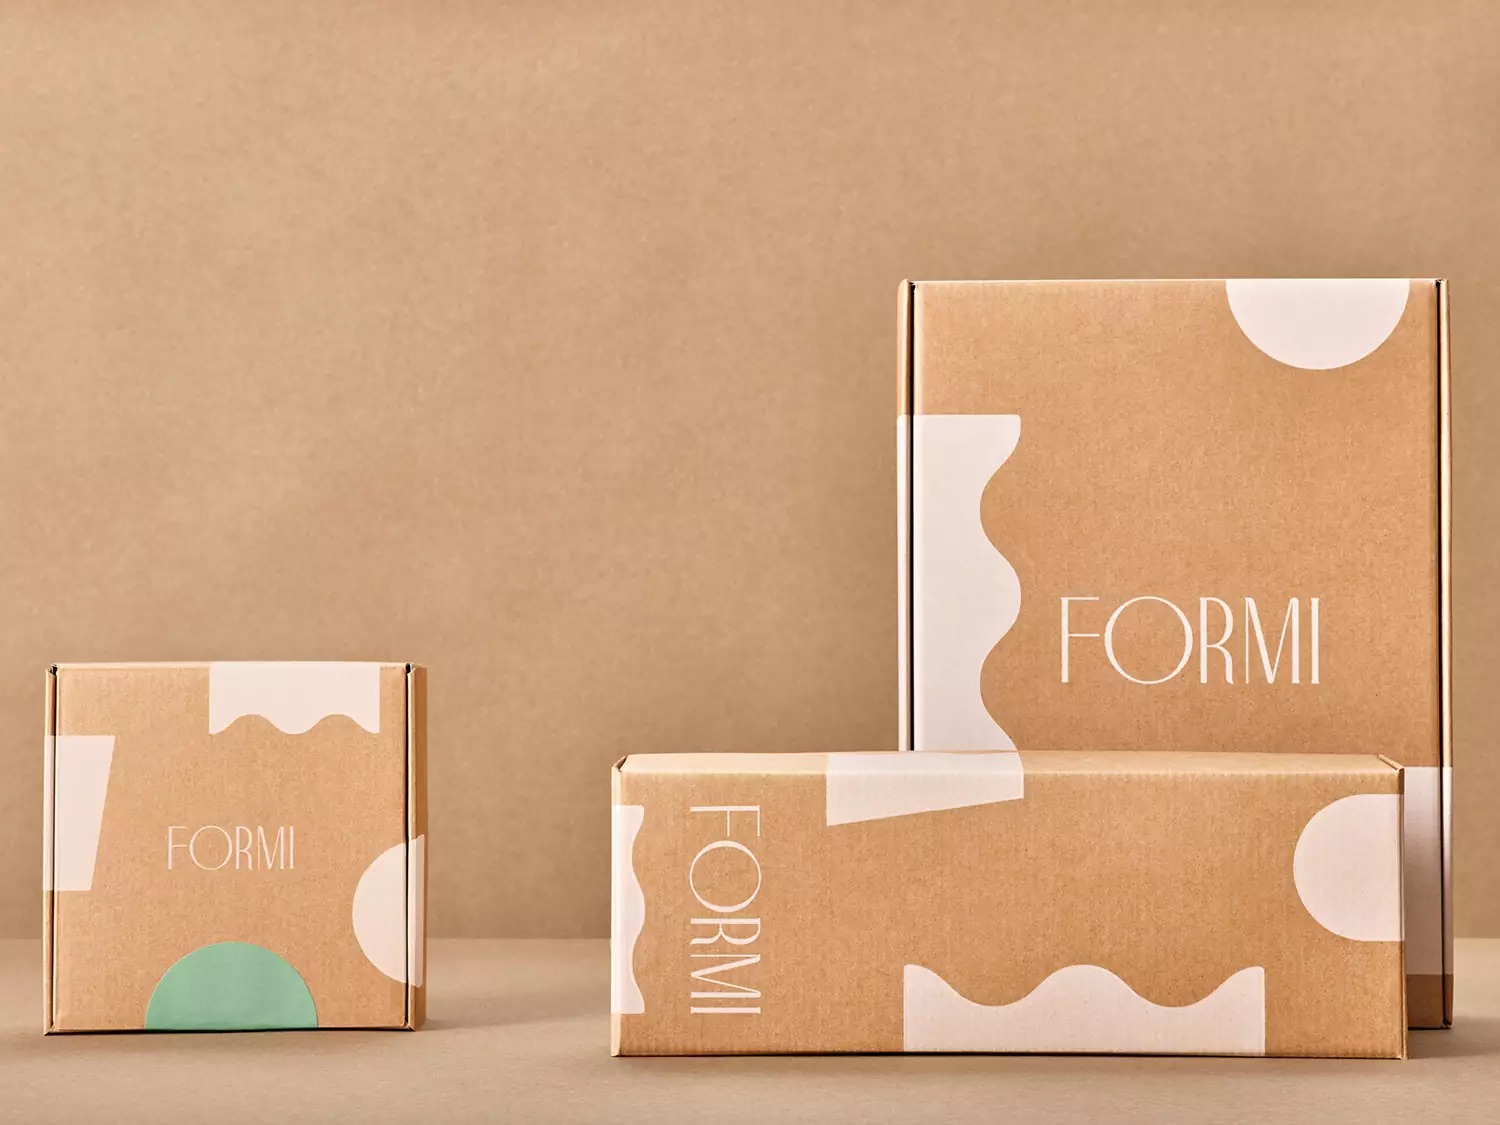 Formi护发产品包装设计作品欣赏,国外时尚护发品牌包装设计。